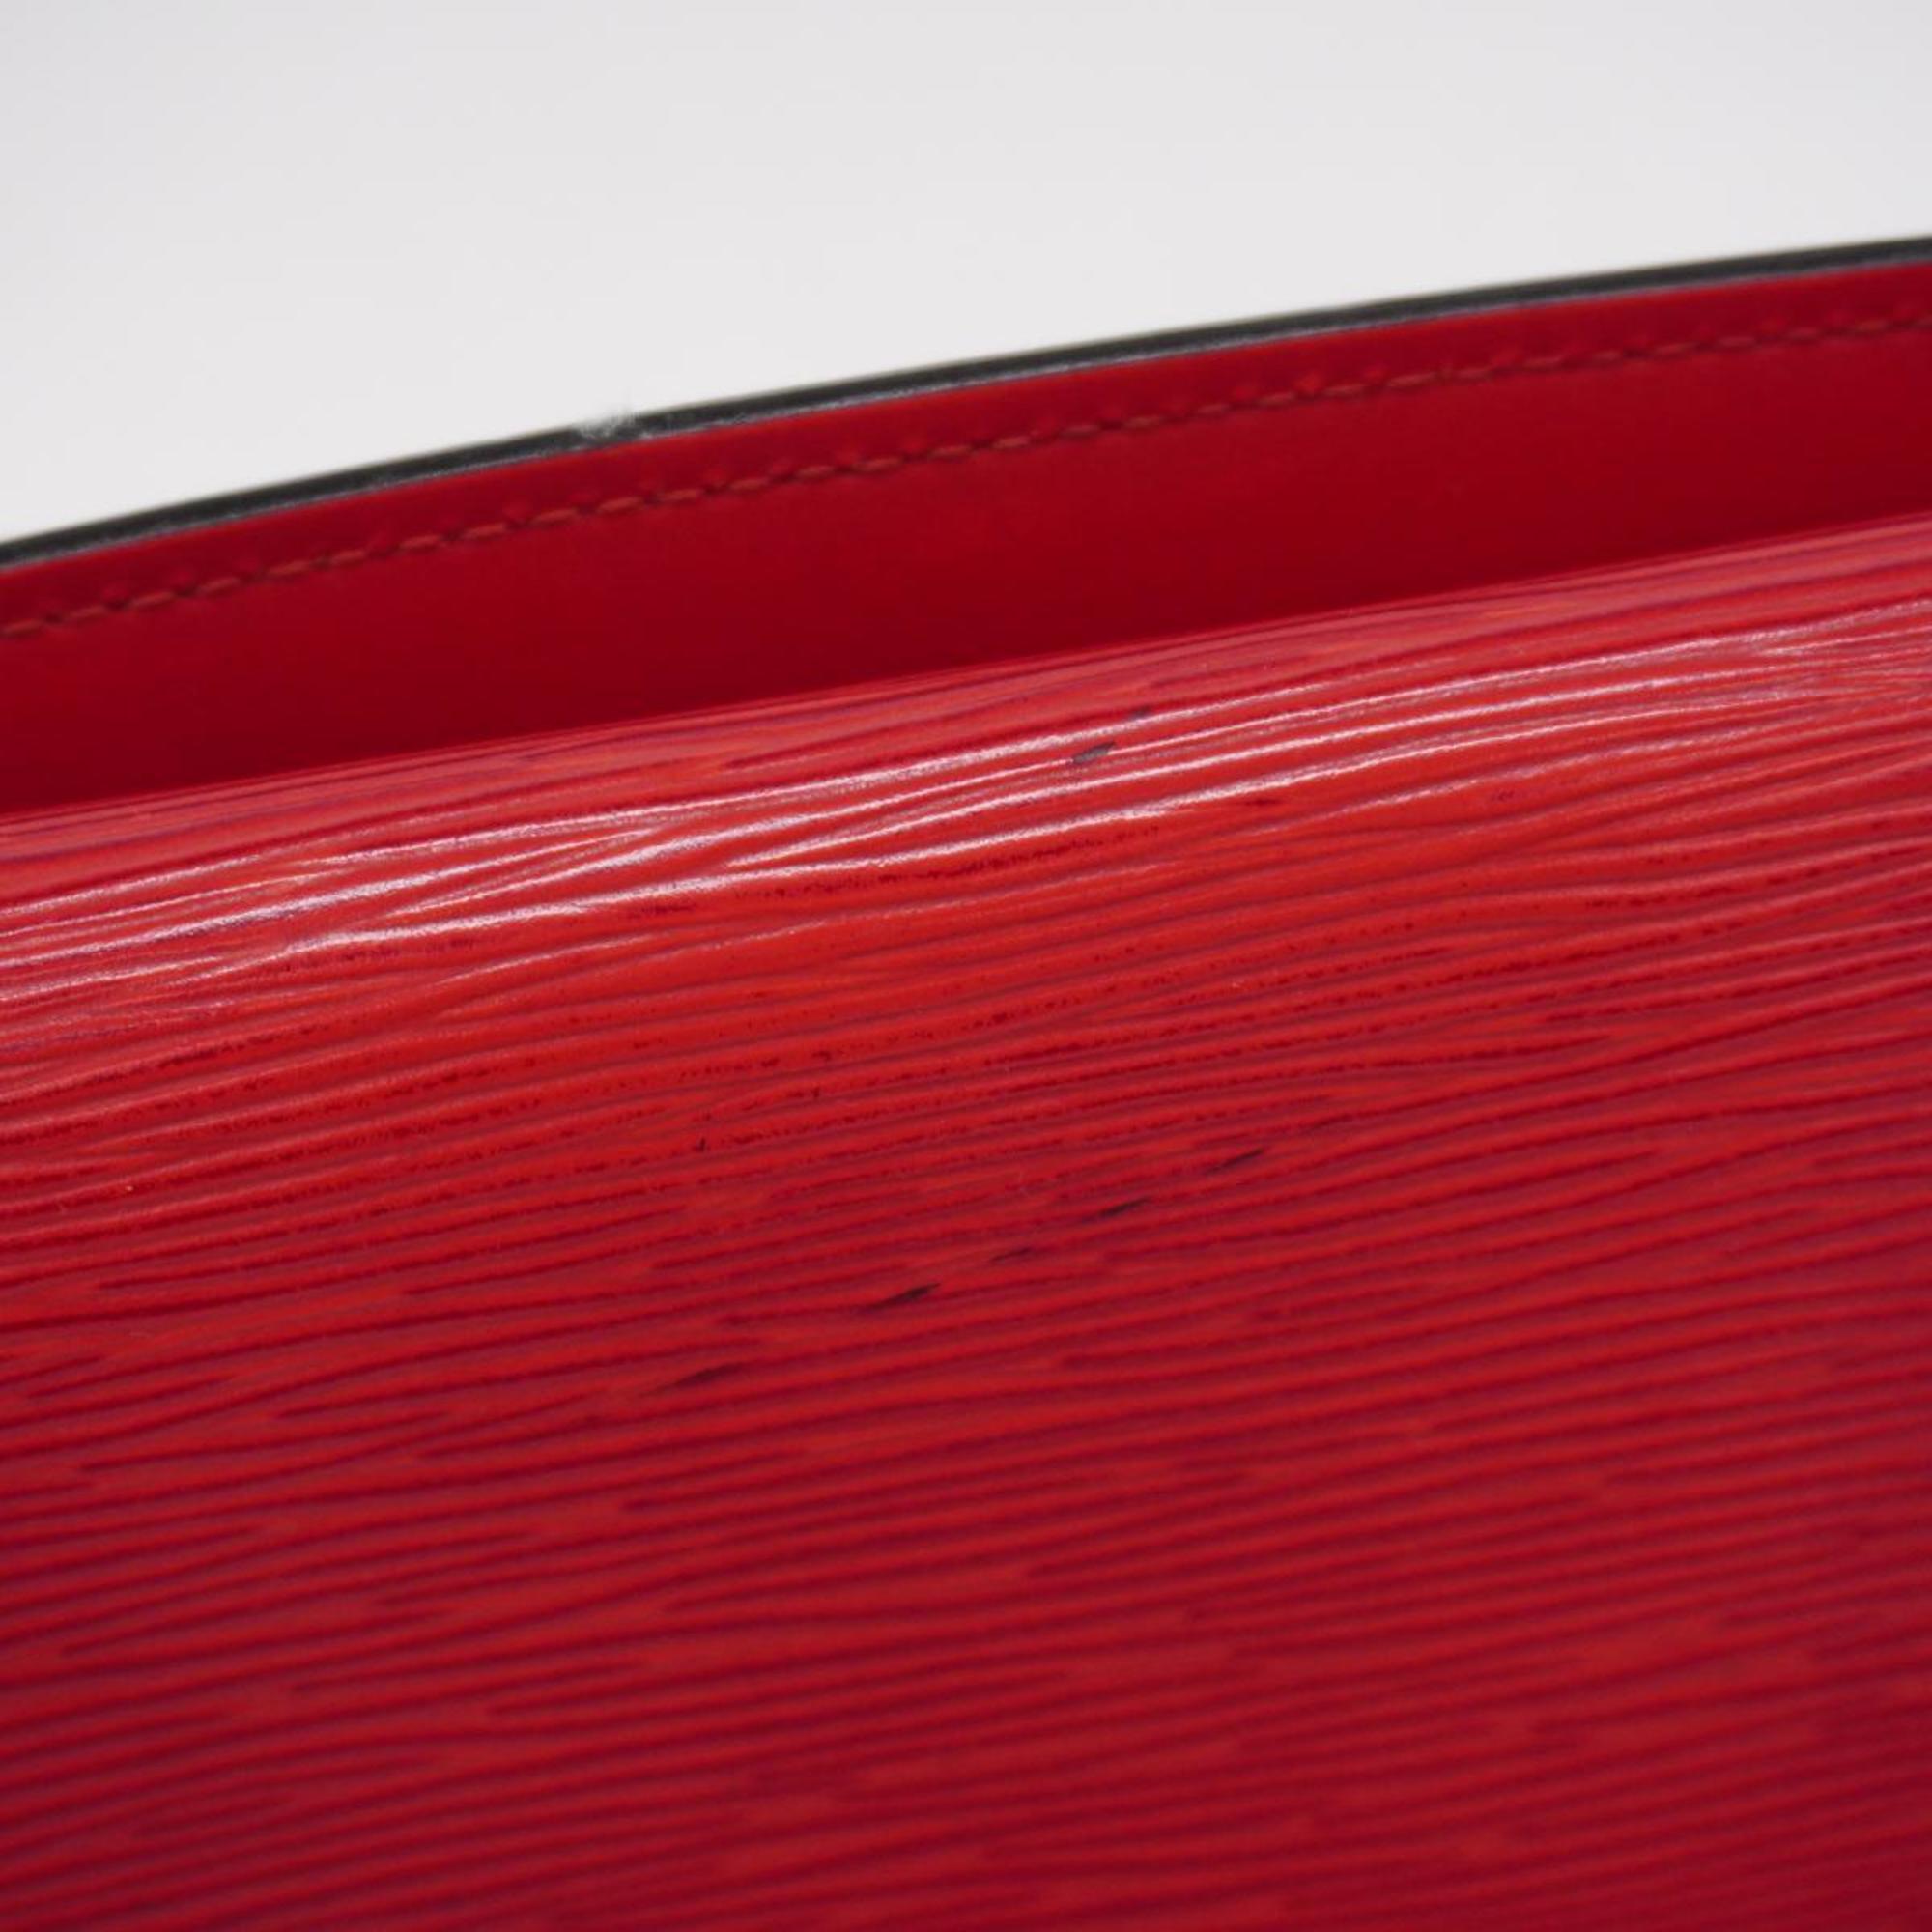 Louis Vuitton Shoulder Bag Epi Grenelle M52367 Castilian Red Ladies